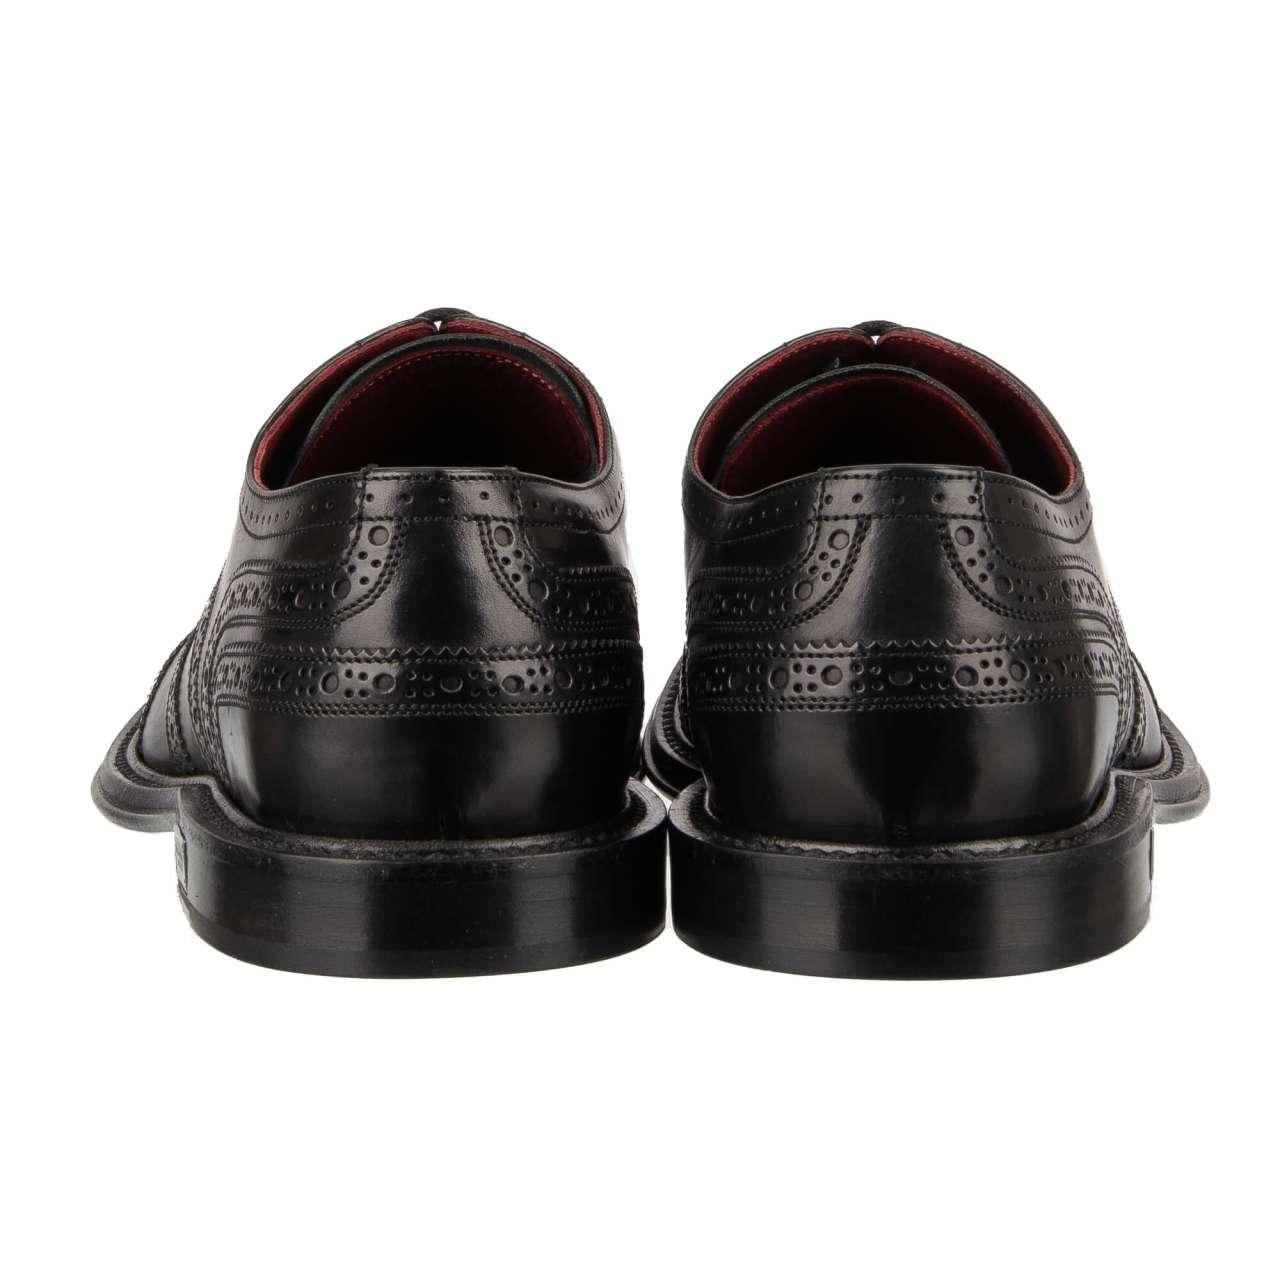 Dolce & Gabbana - DG Logo Formal Calf Leather Derby Shoes MARSALA Black EUR 41.5 For Sale 2